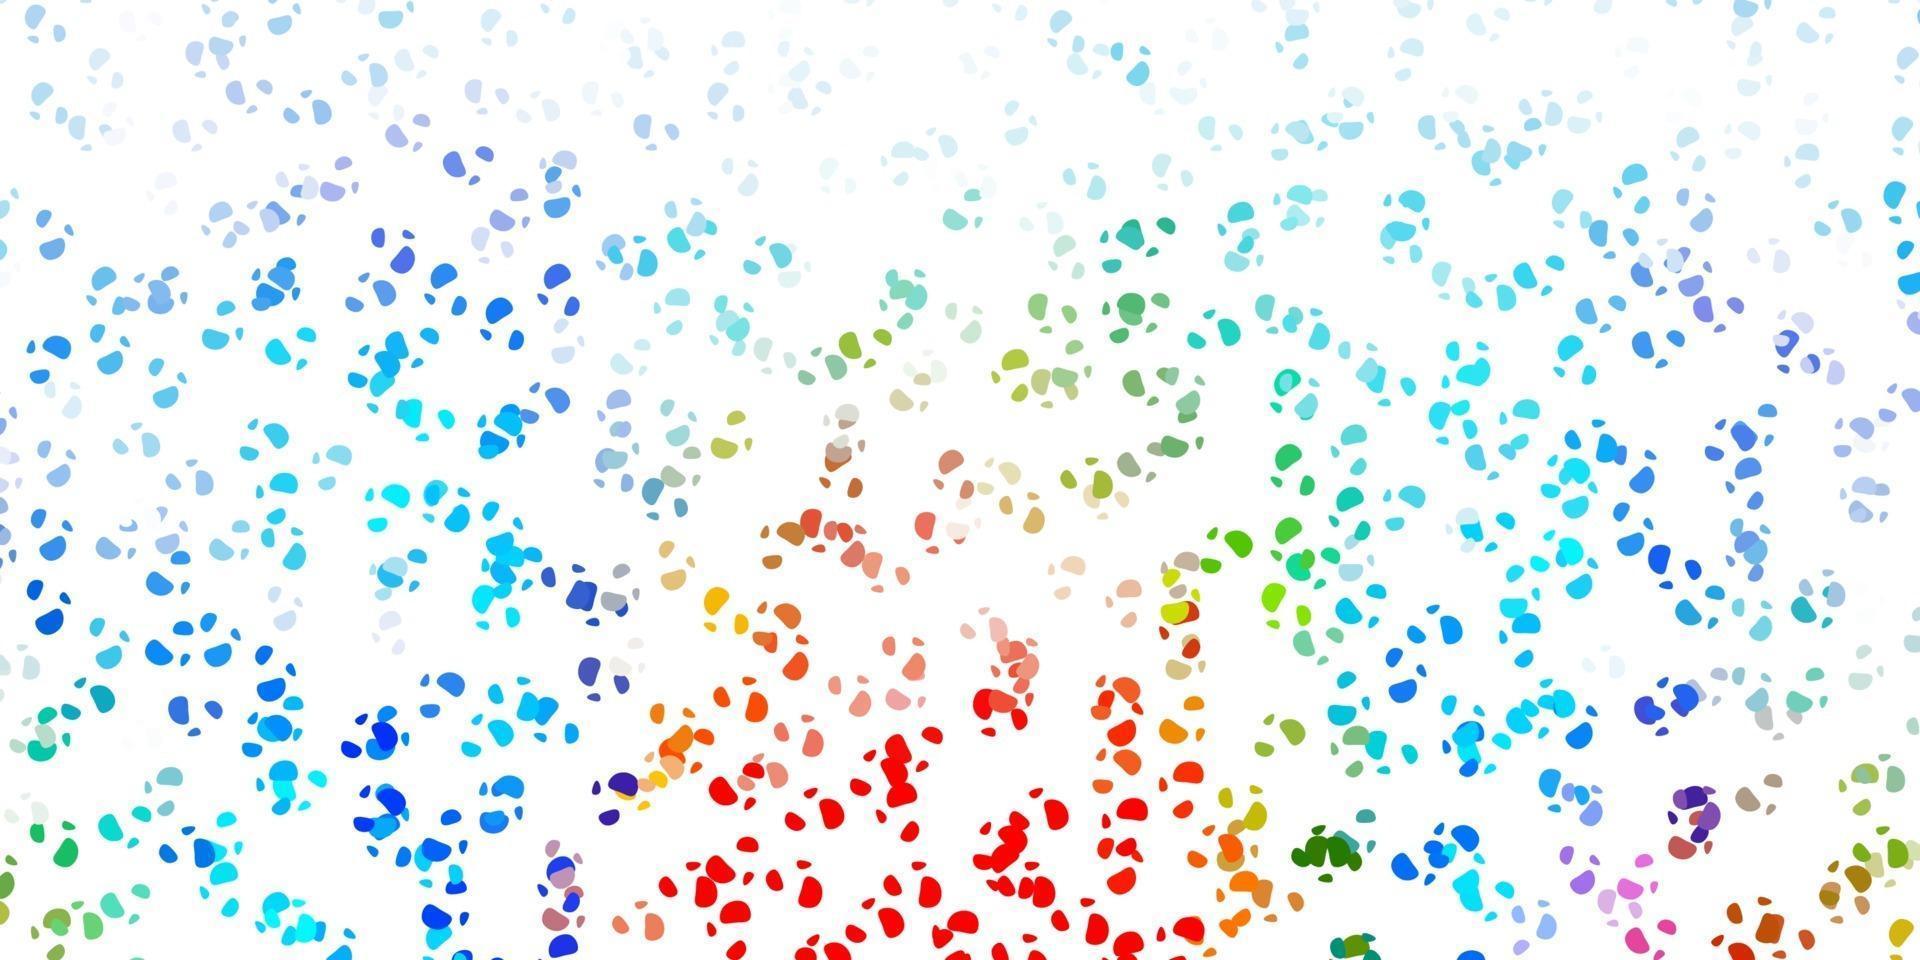 texture vettoriale multicolore leggera con forme di memphis.